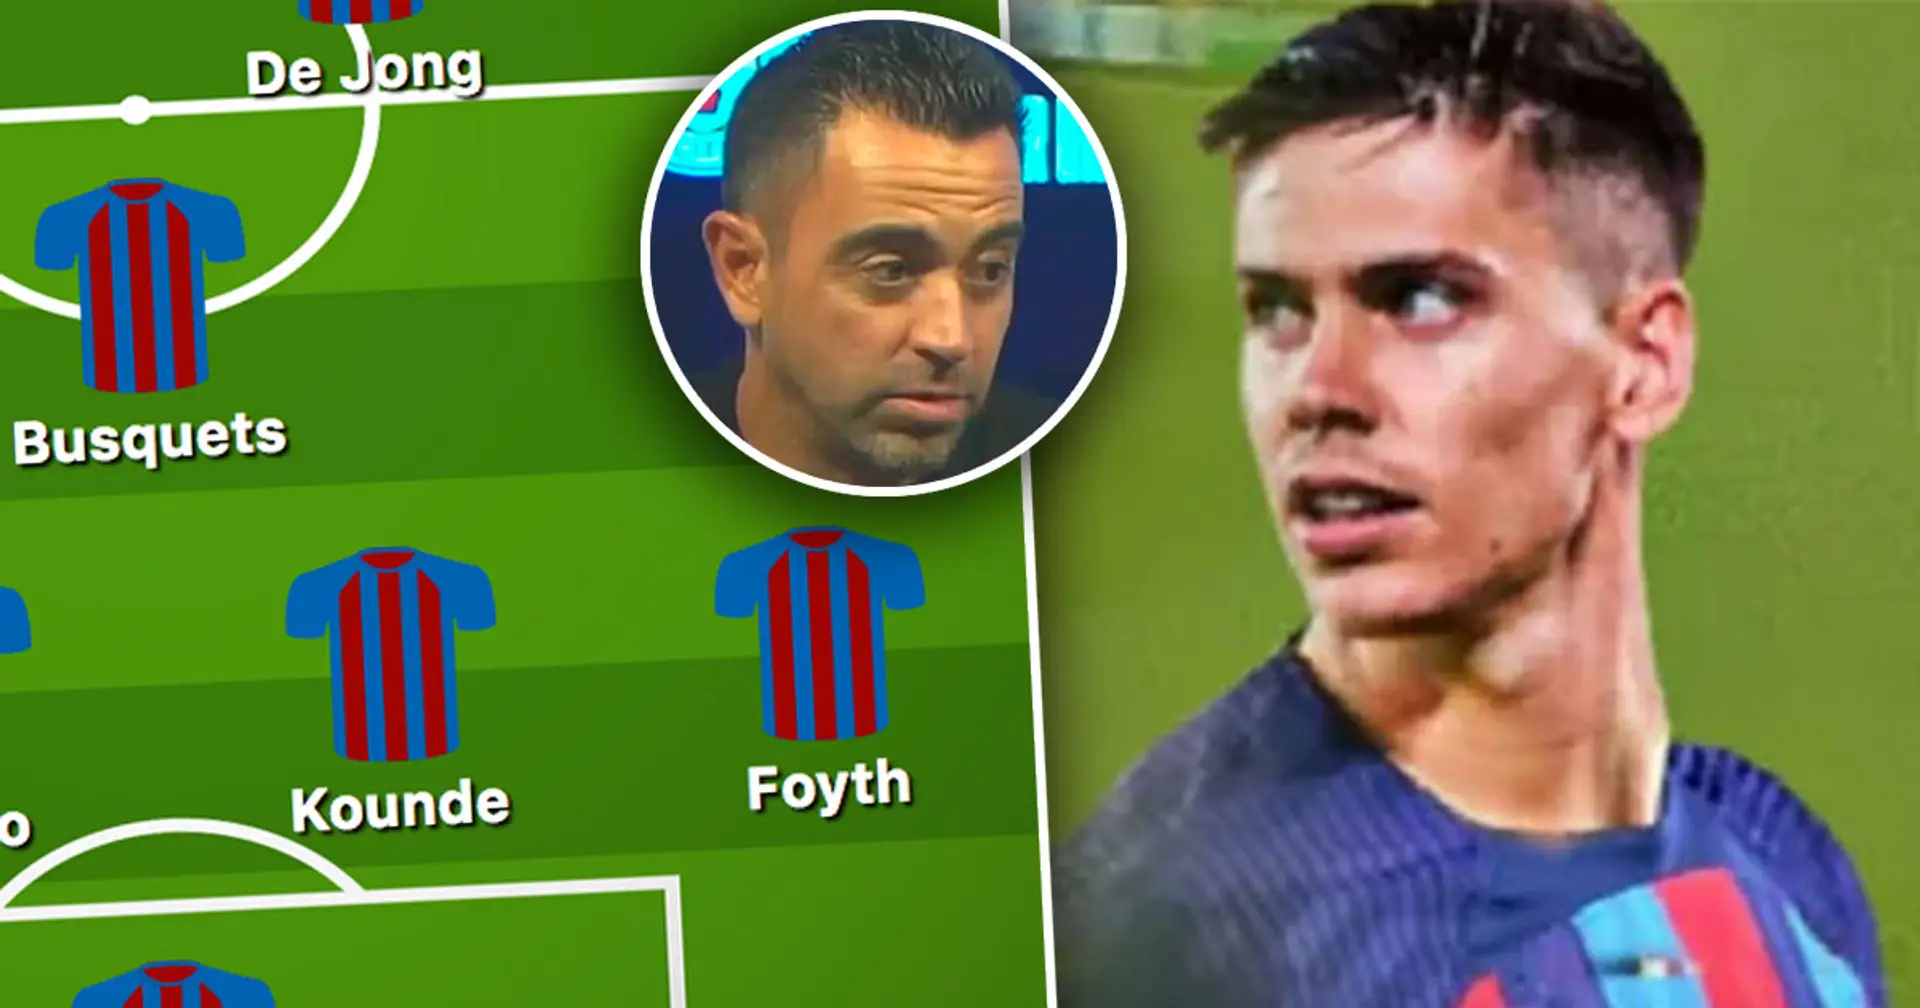 El Barcelona se prepara para fichar a Foyth: 2 posibles alineaciones con el defensa argentino